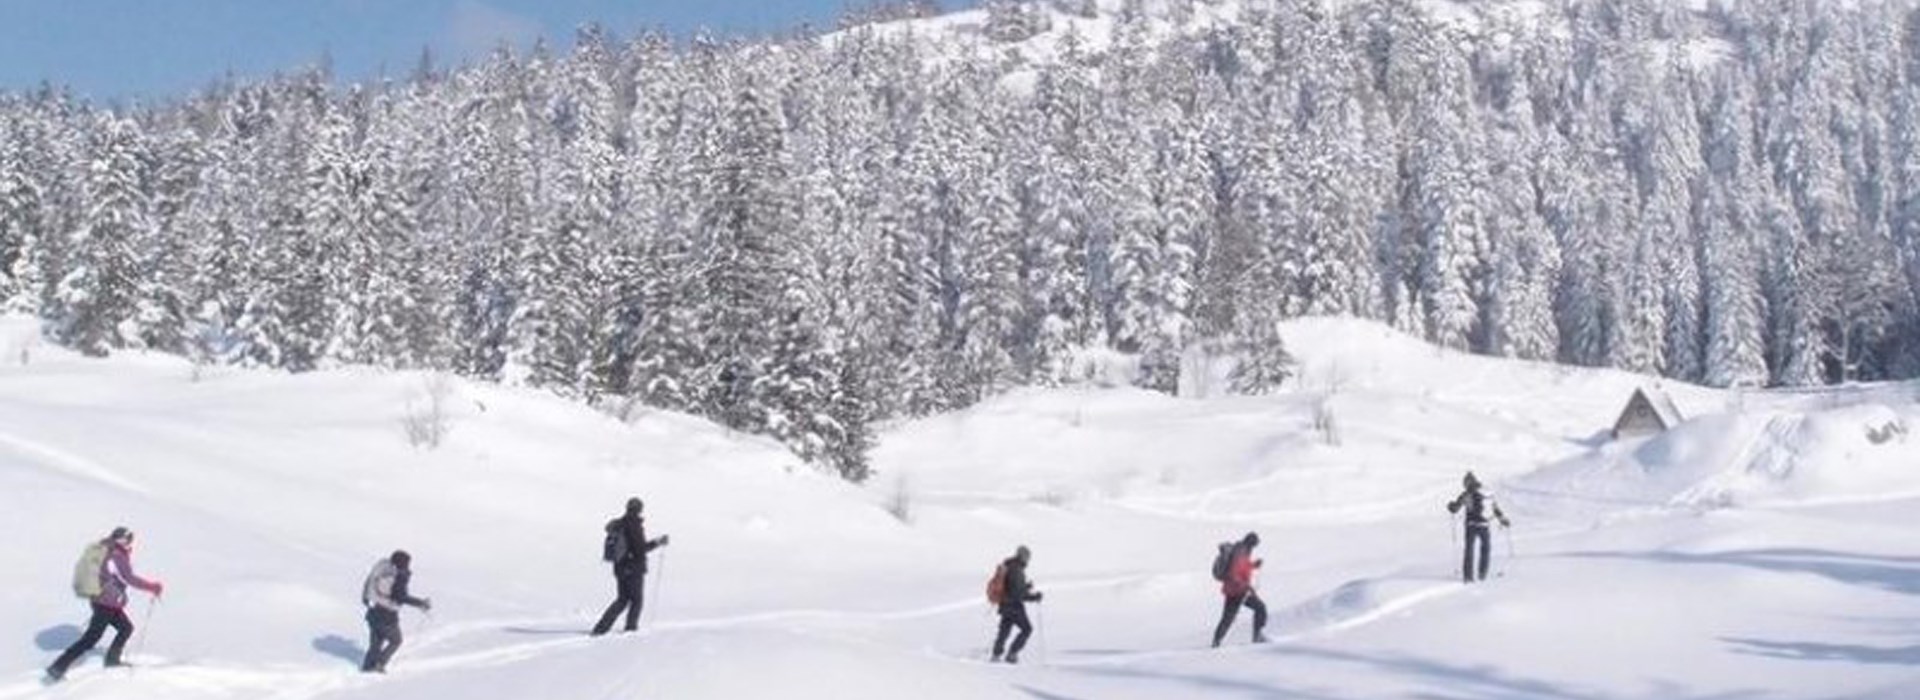 Visiter Le Vercors en ski de fond - Rhône-Alpes